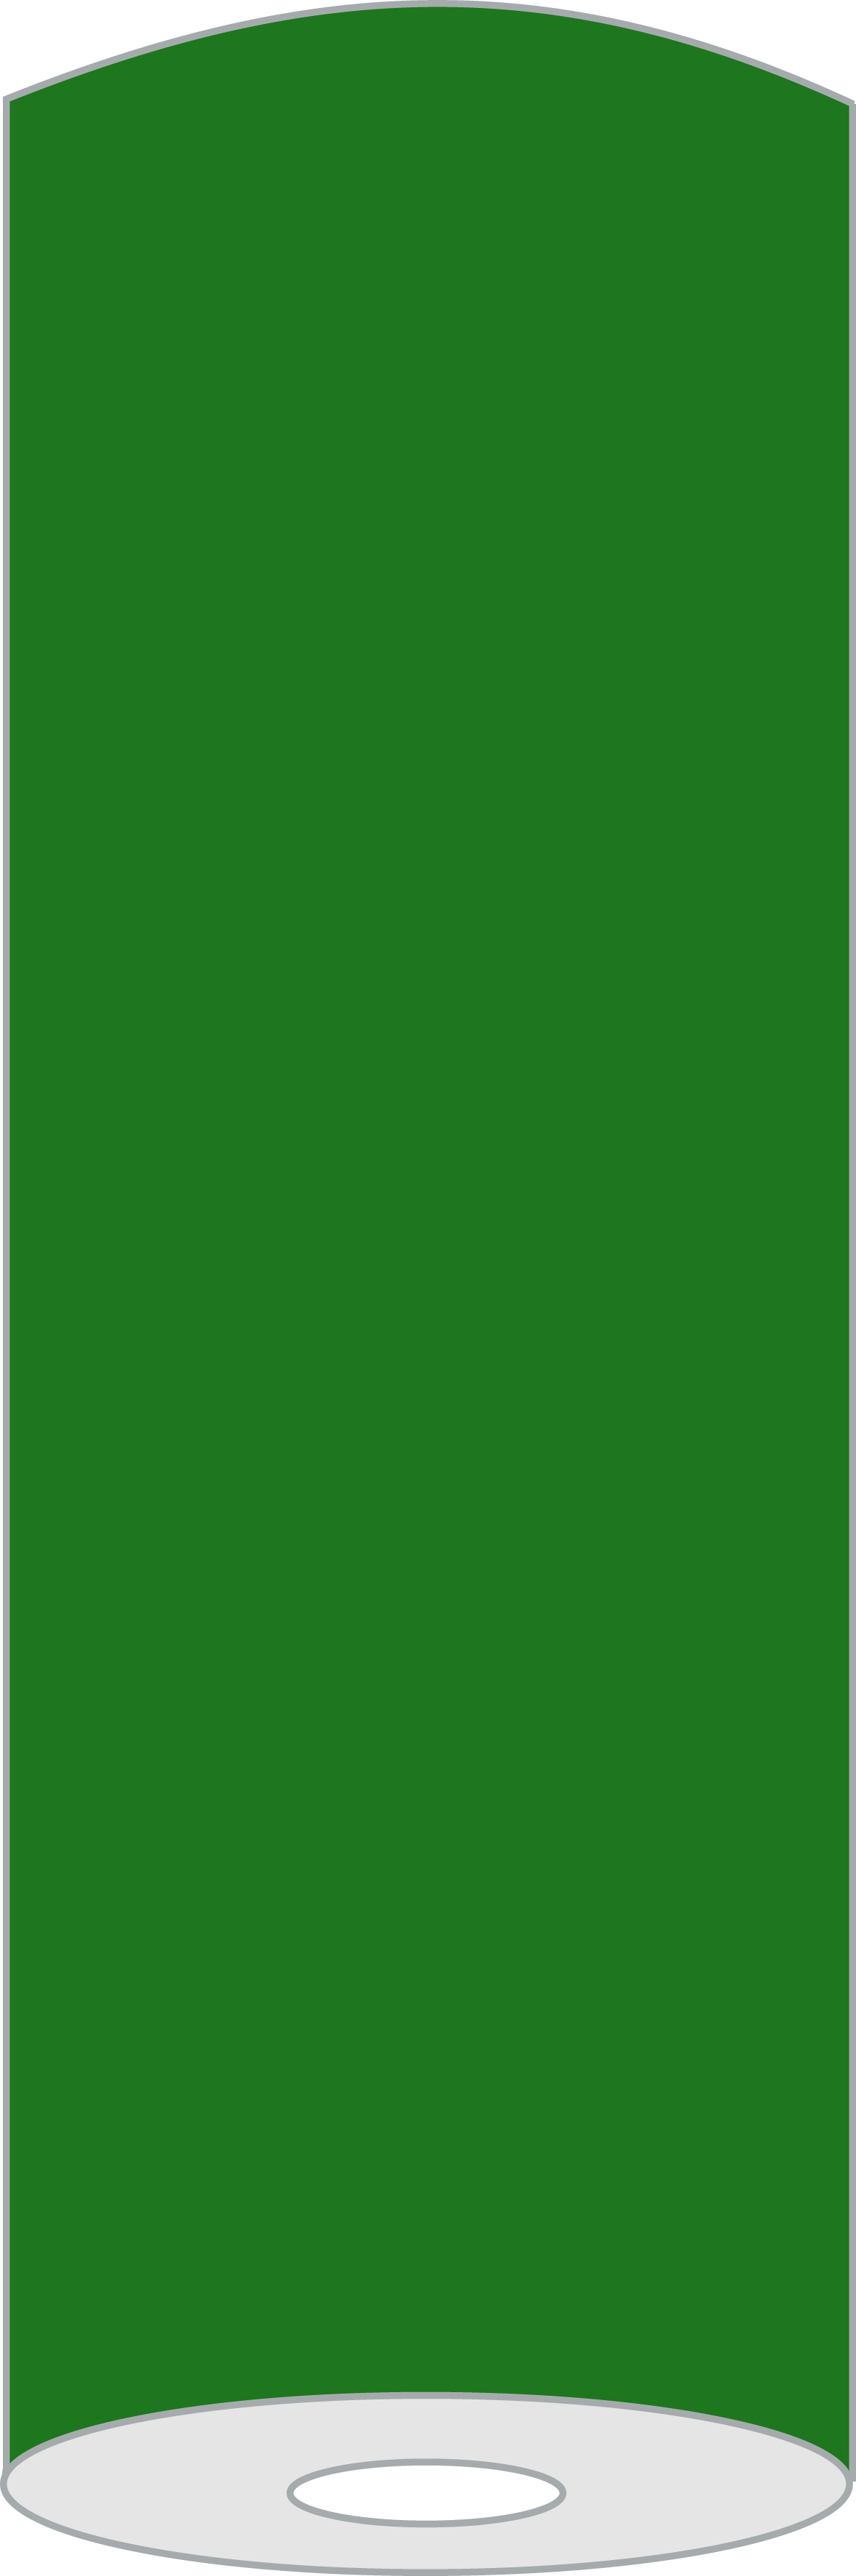 Mank Tischdeckrolle Linclass 1,20 x 25 m, Basic dunkelgrün